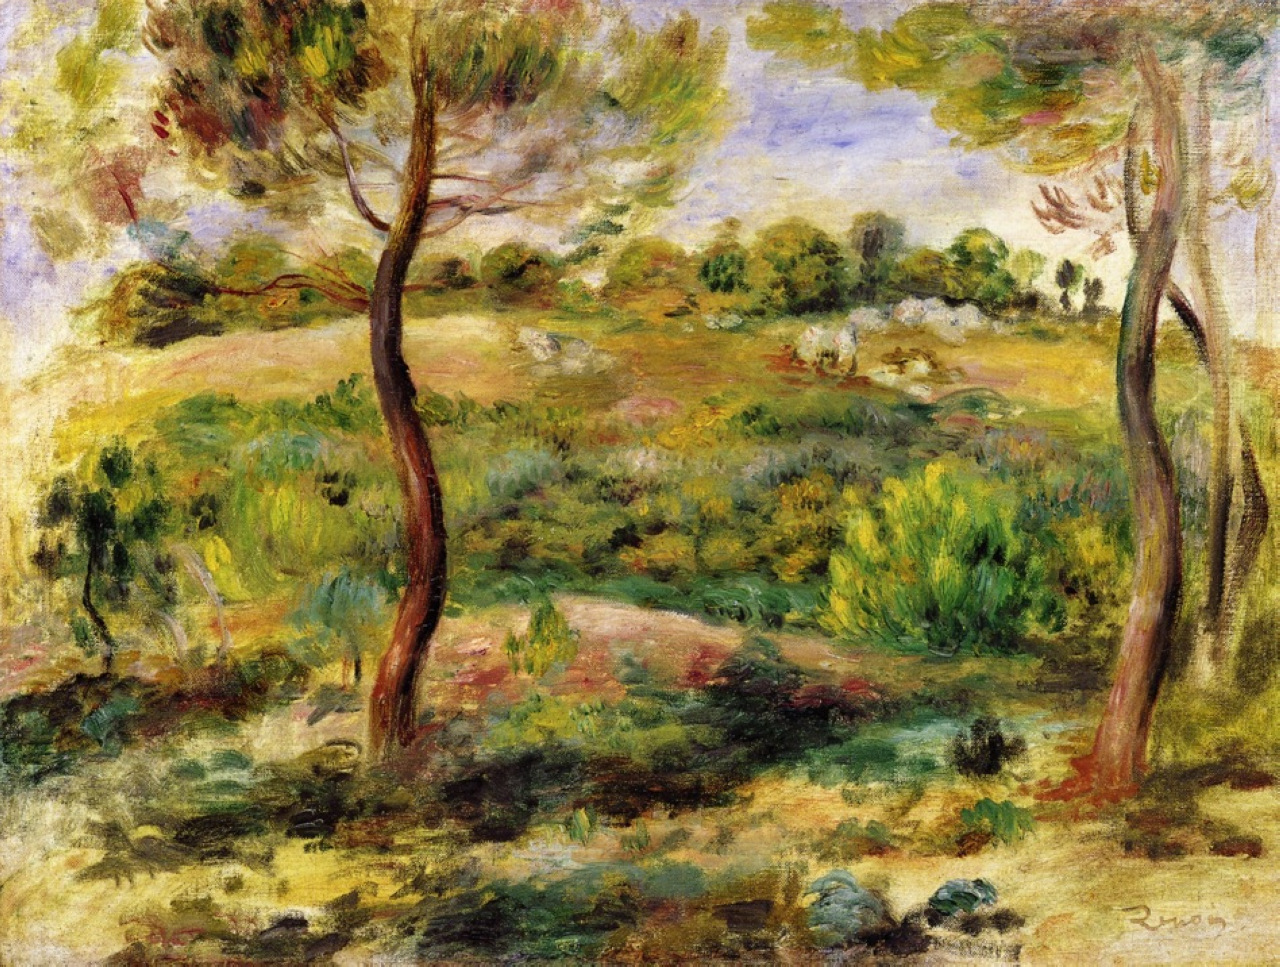 Pierre+Auguste+Renoir-1841-1-19 (525).jpg